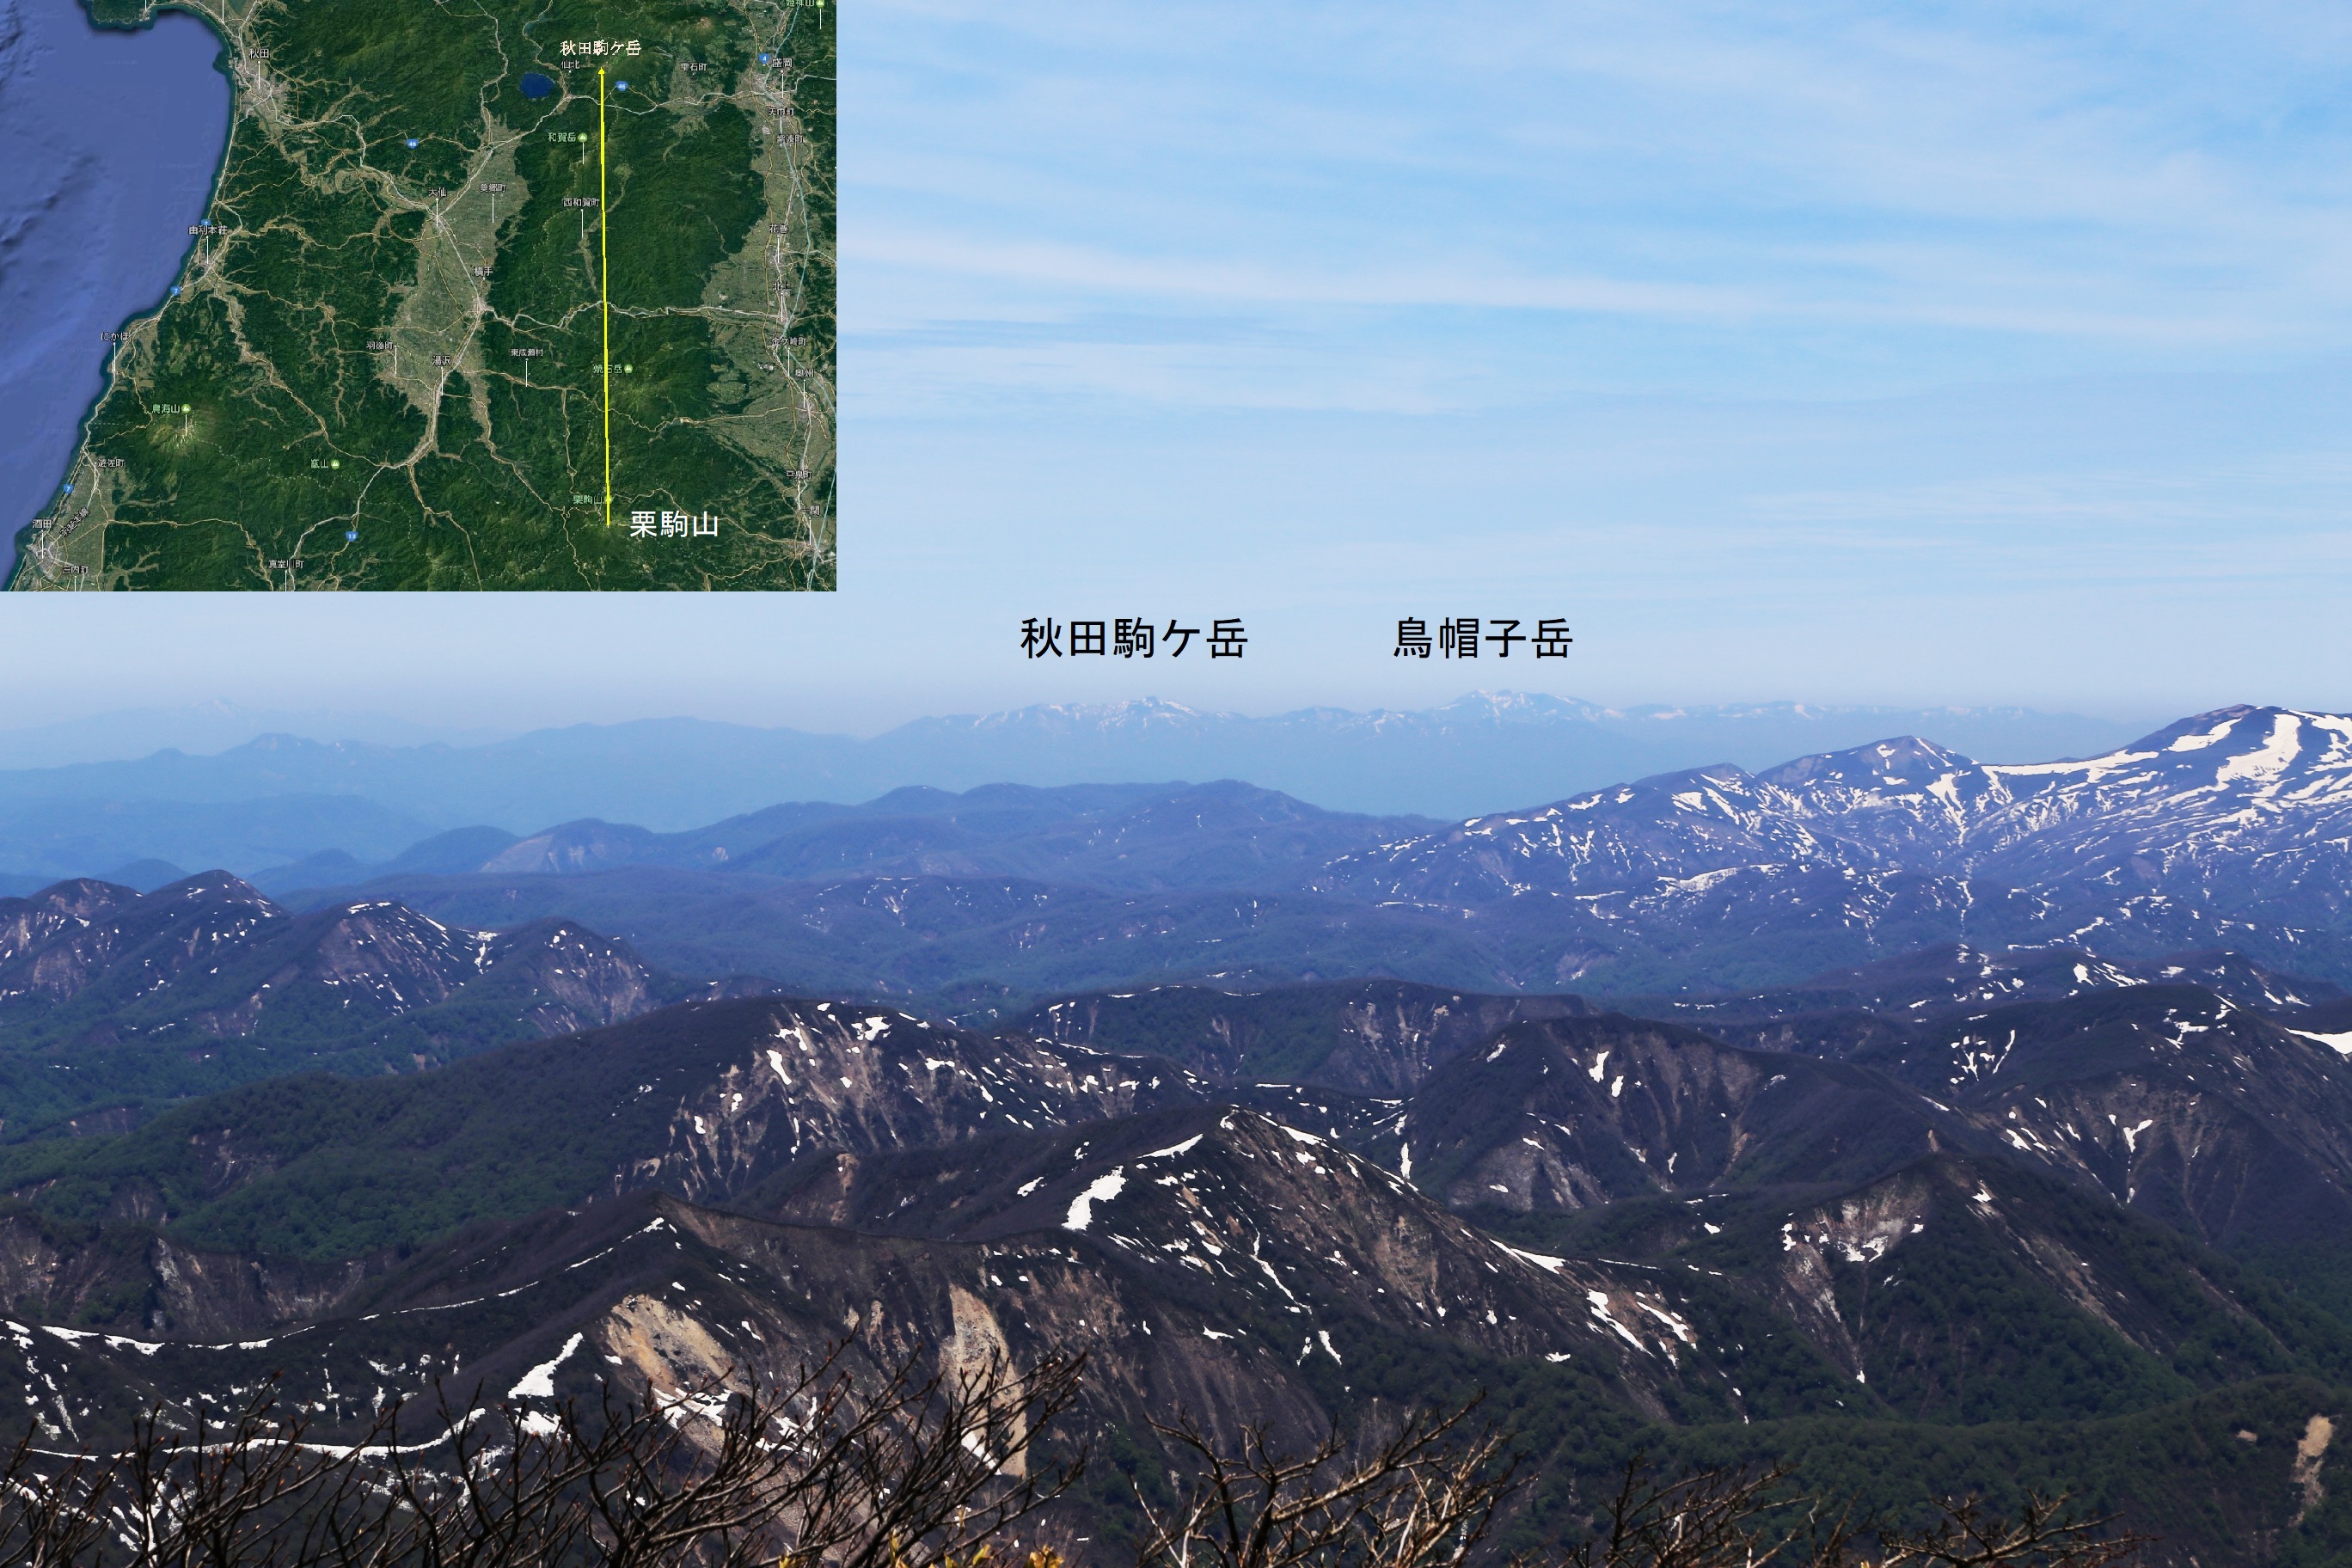 山頂からの北方向の眺め。遠くに秋田駒ヶ岳や鳥帽子岳が見える。